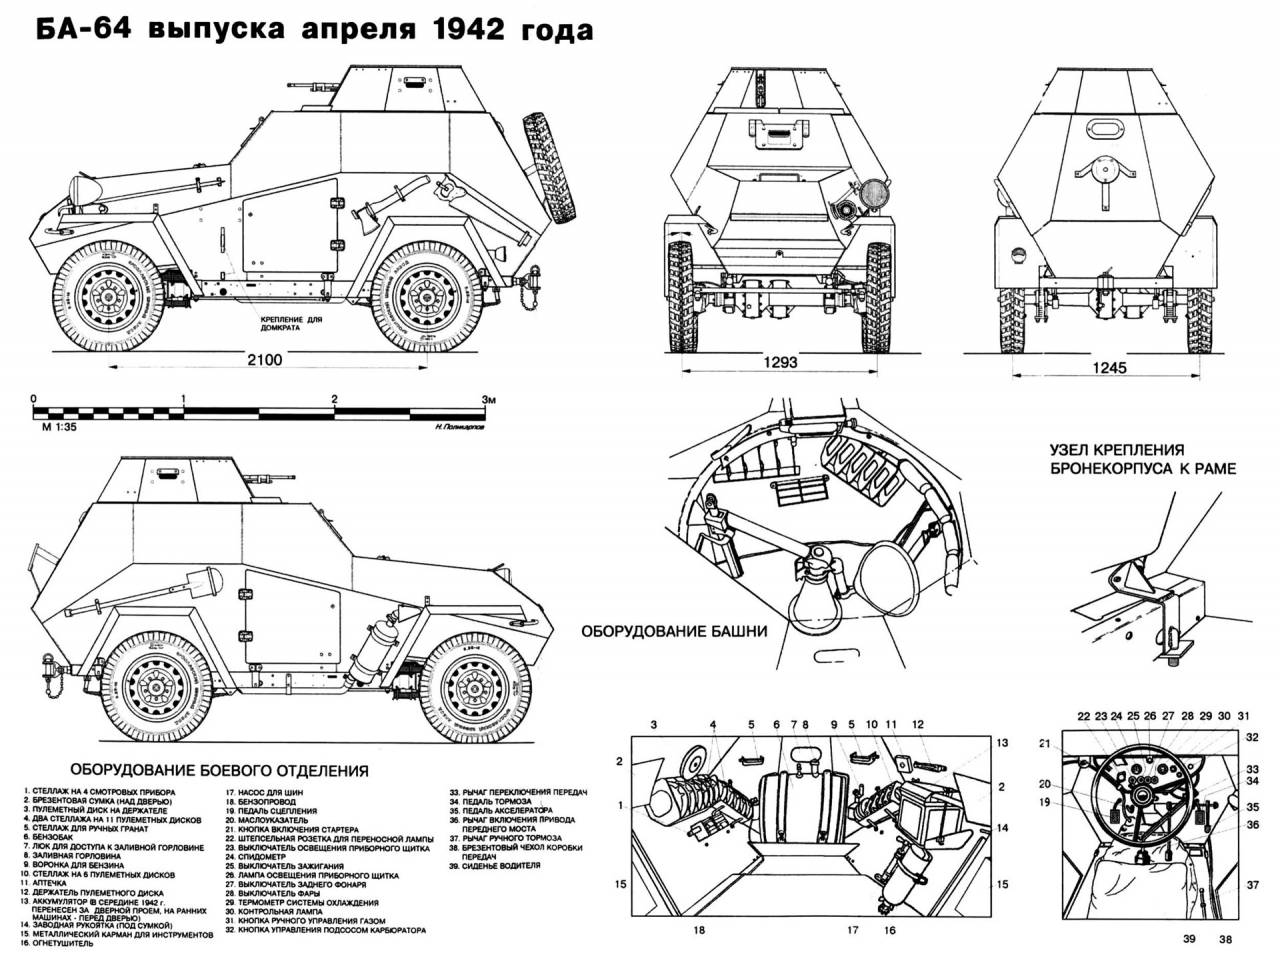 Универсальный советский броневик БА-64